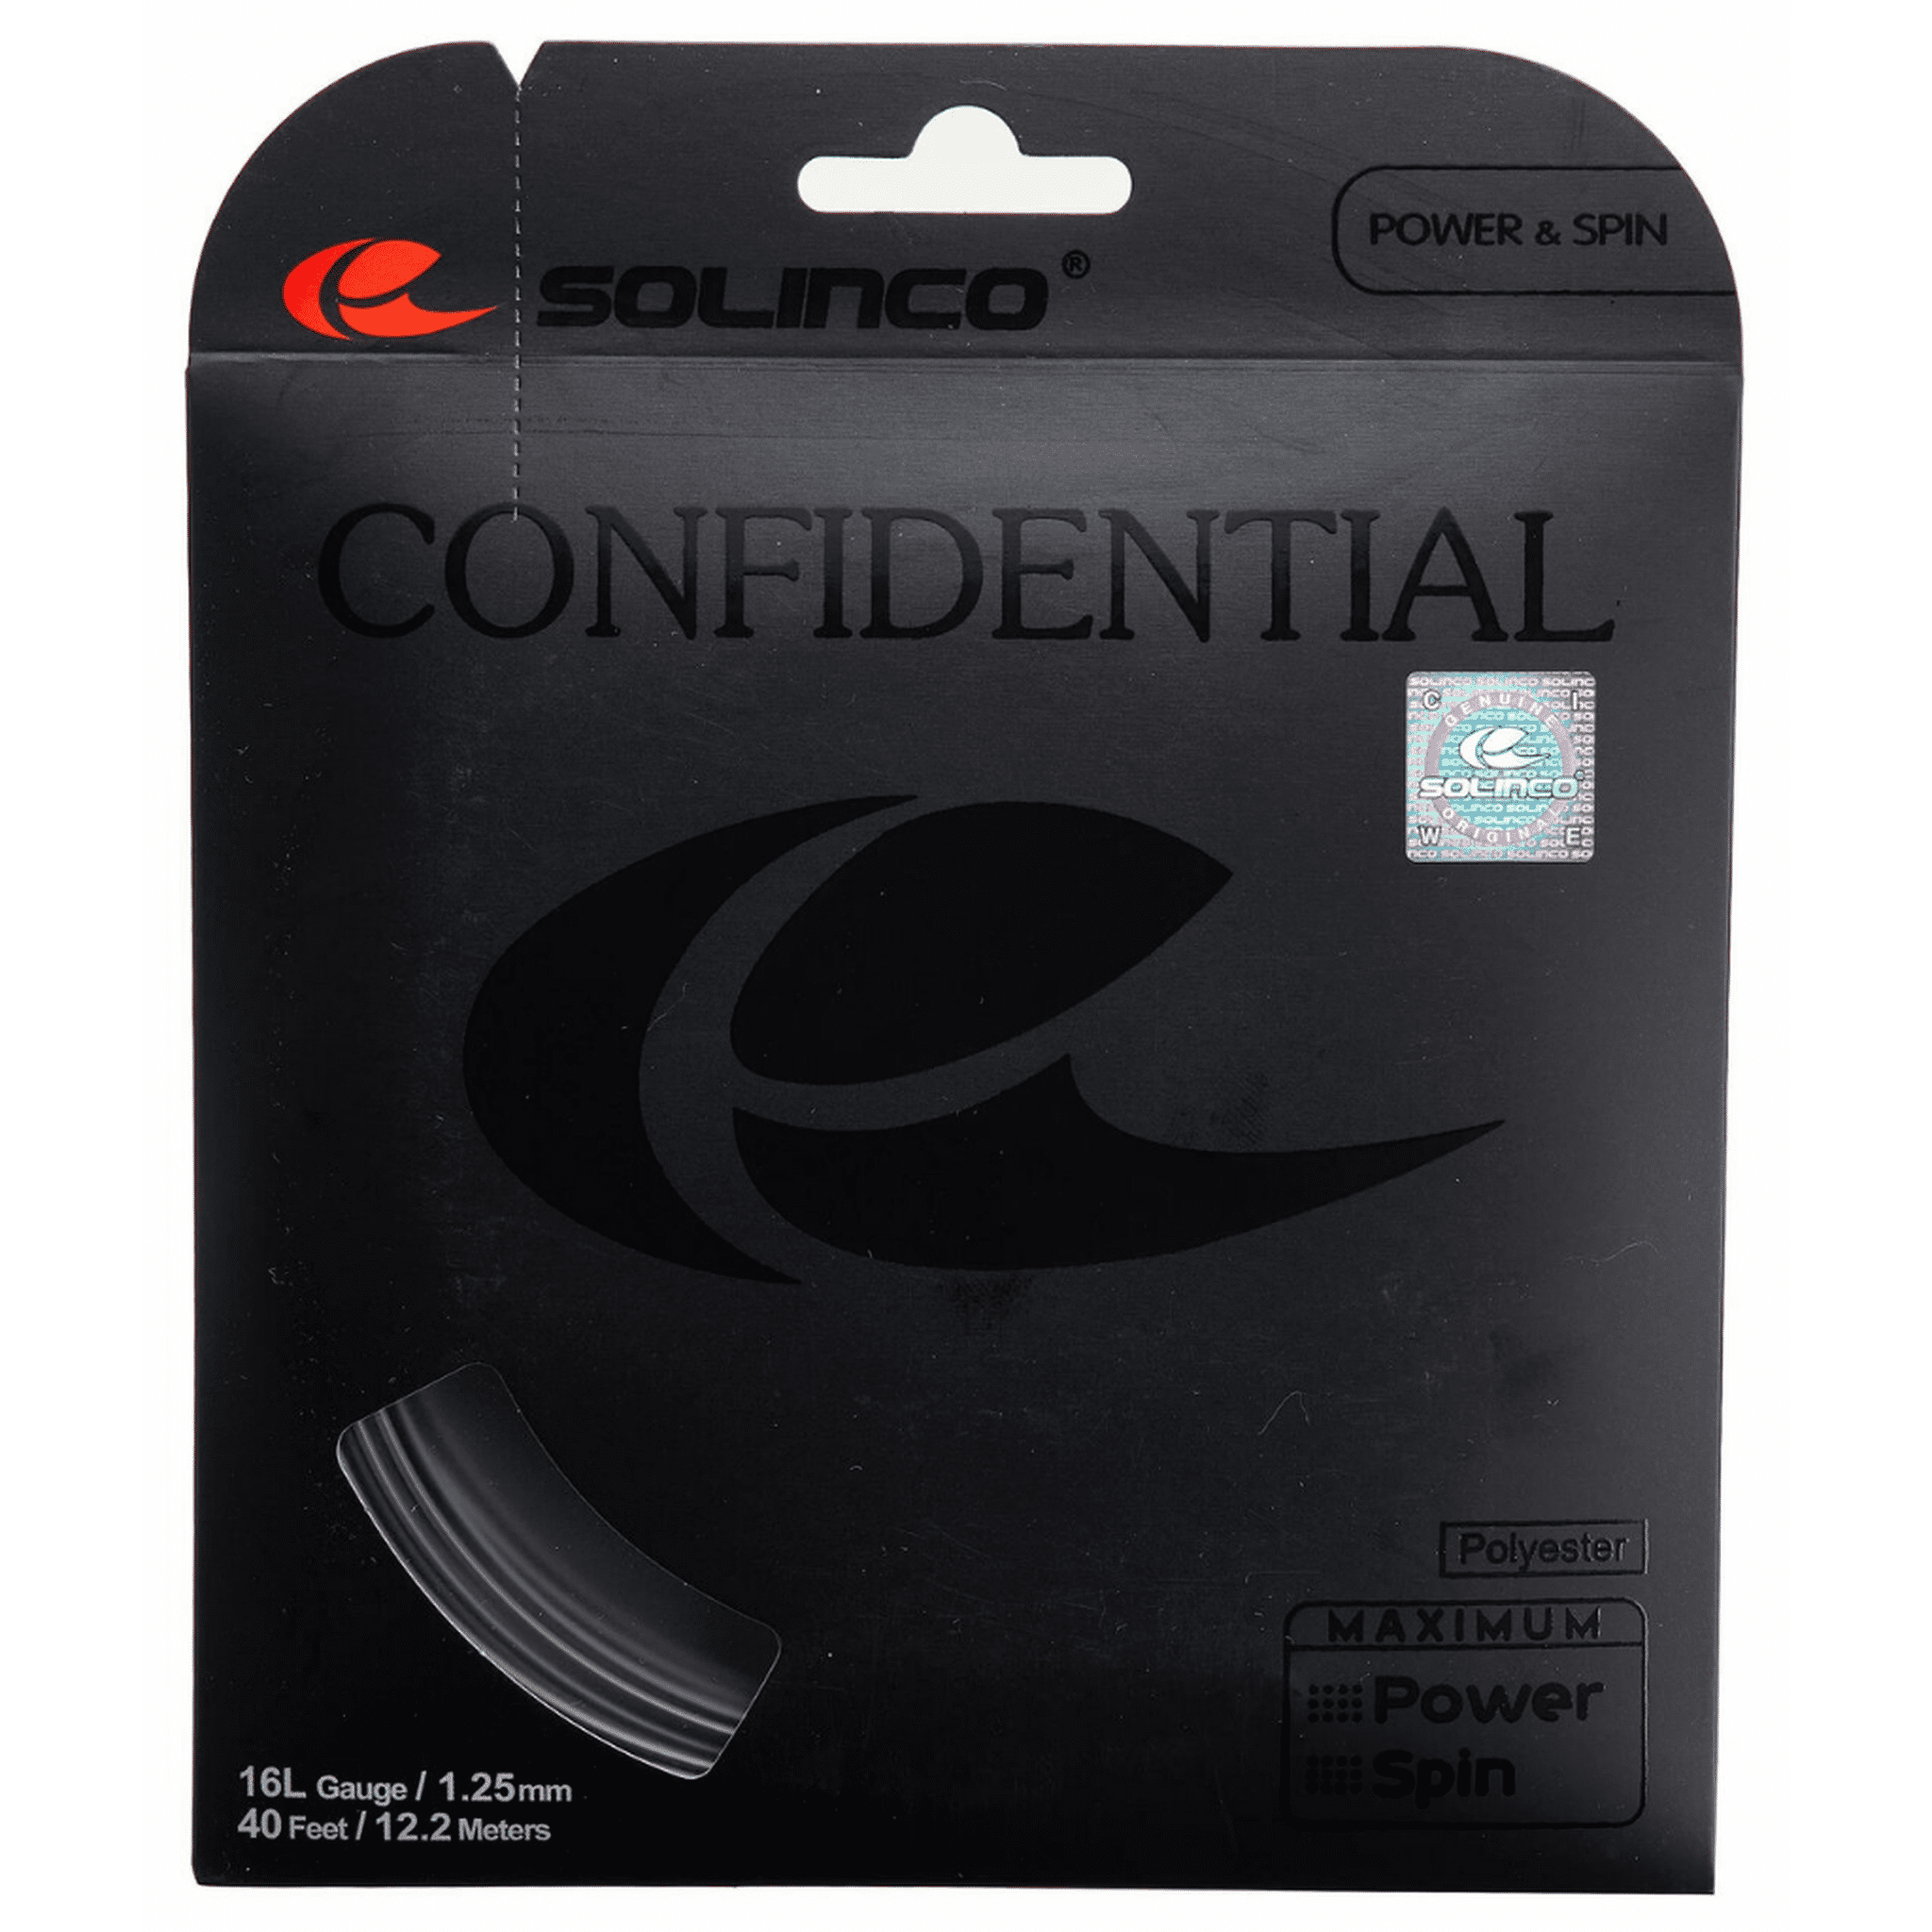 Solinco Confidential Set 12m